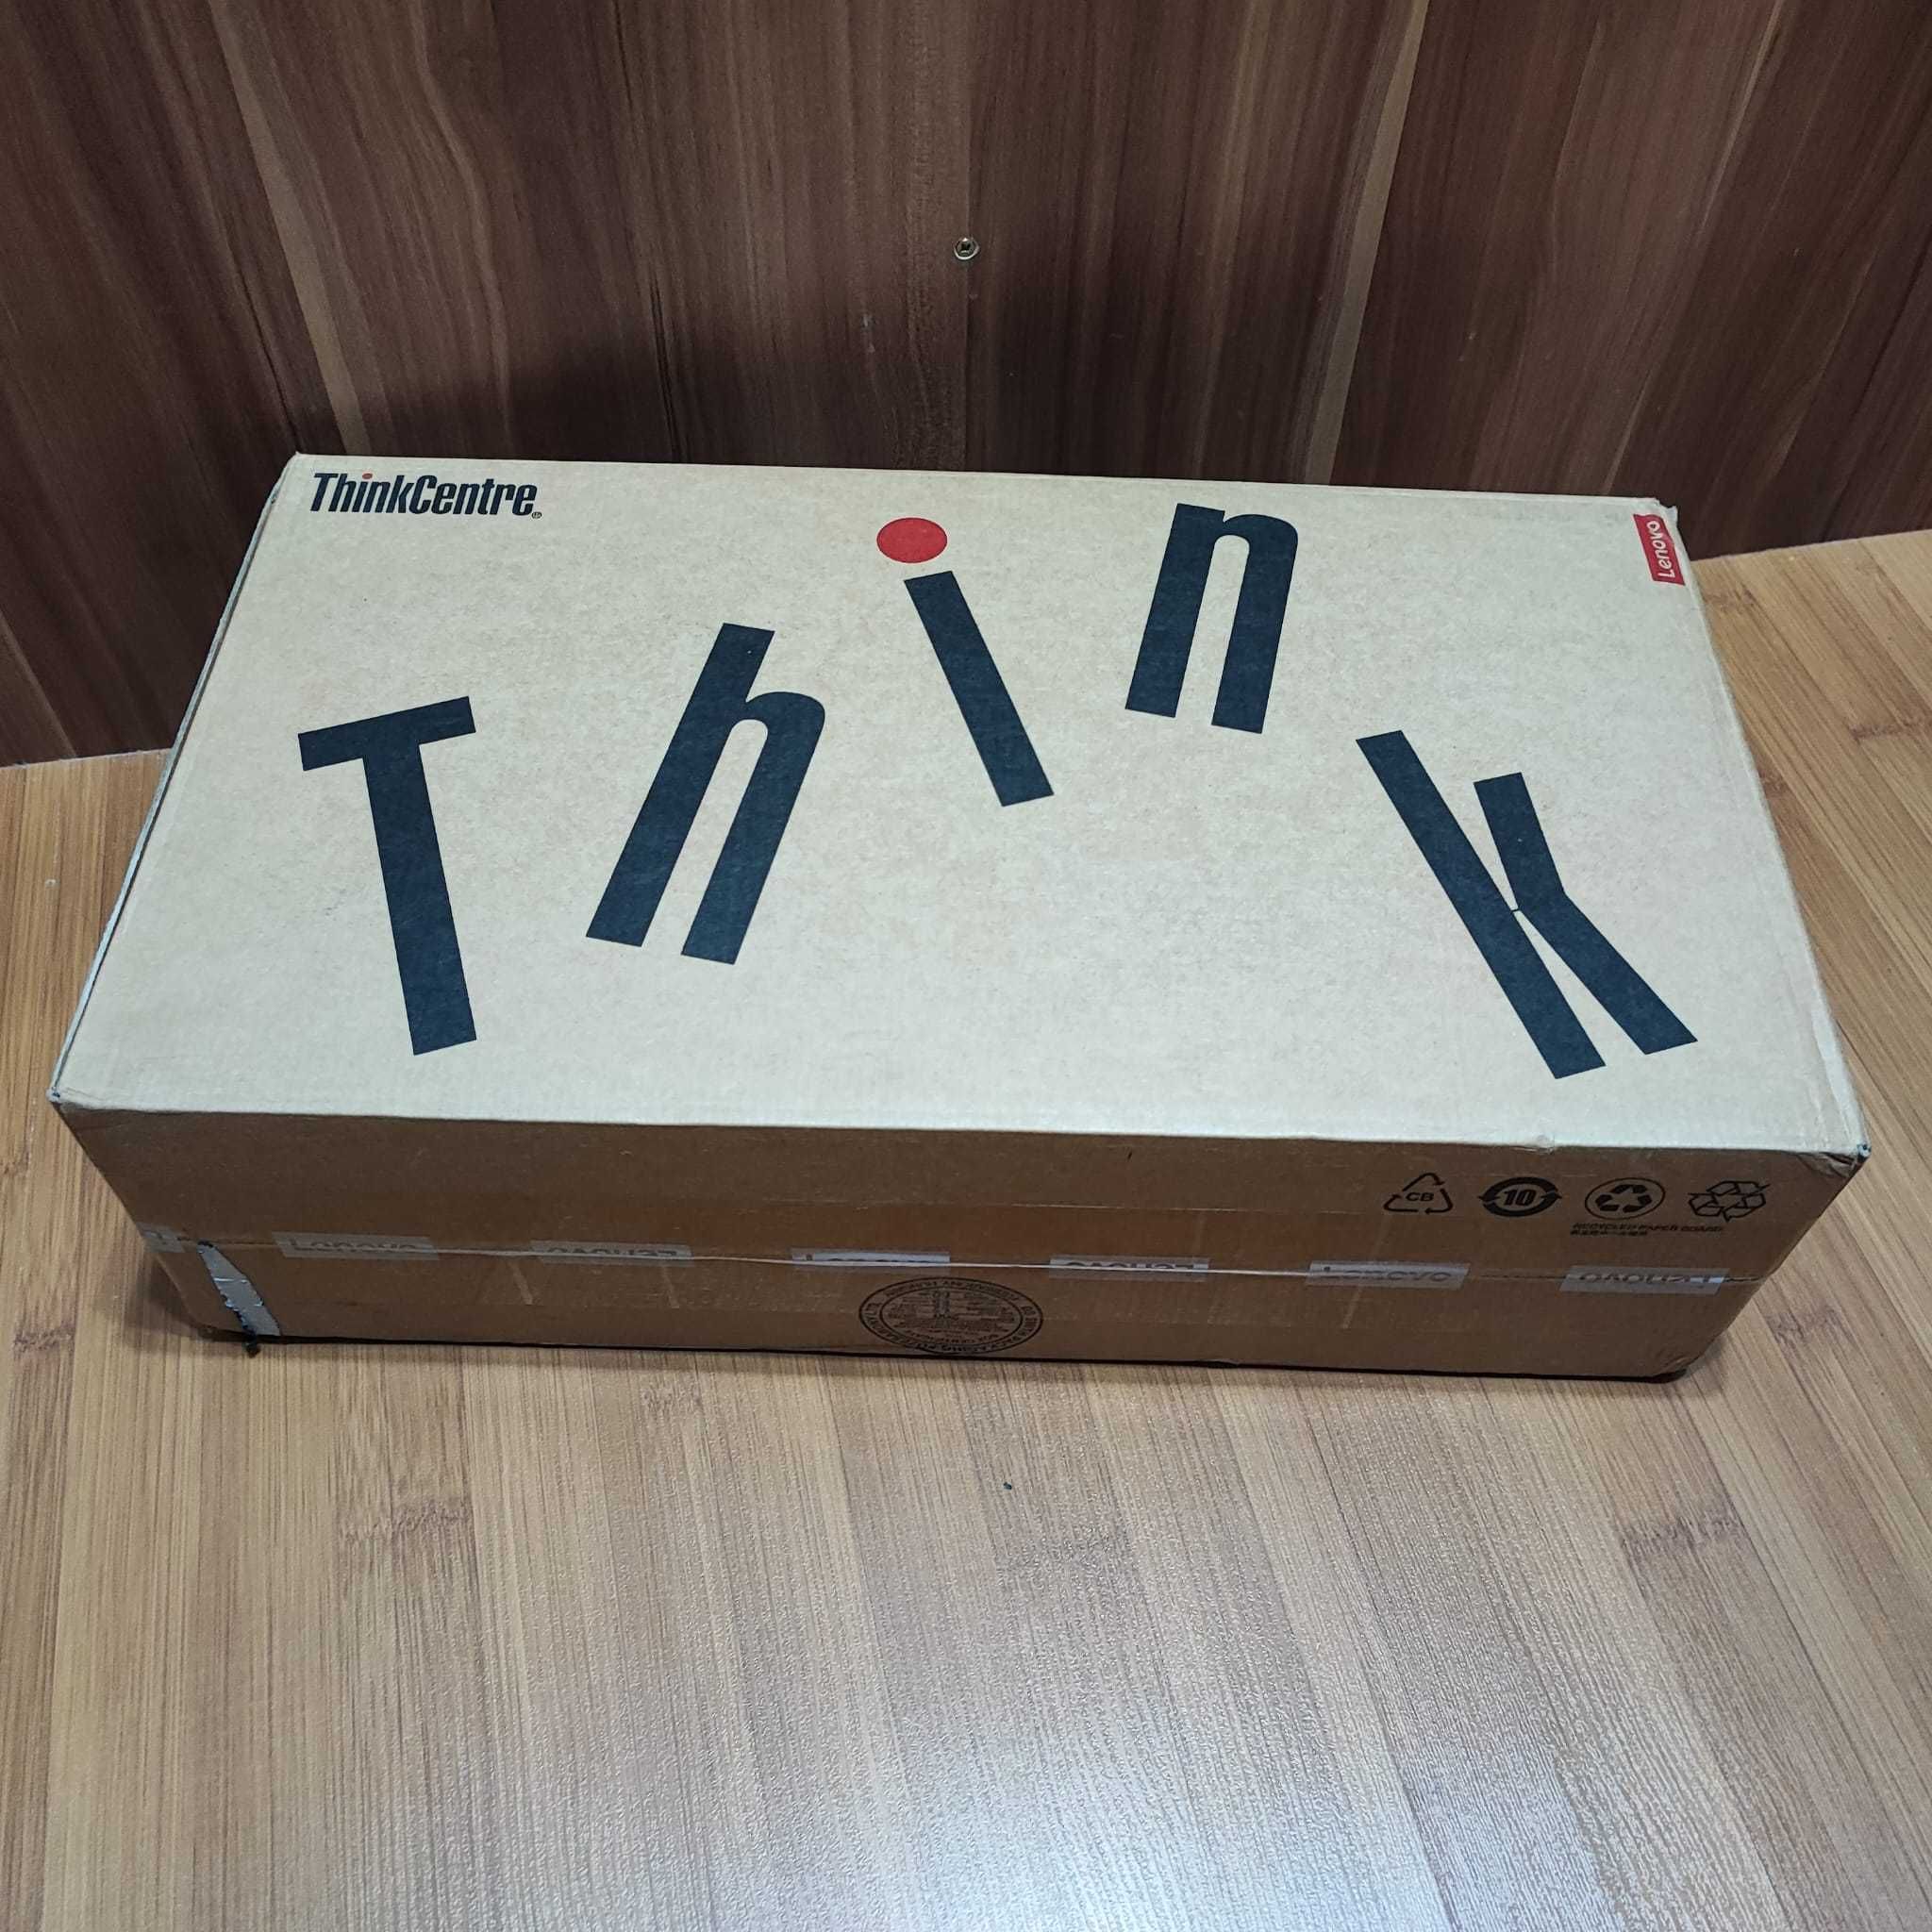 PC Lenovo ThinkCentre M720Q, kit complet la cutie,  DDR4, i5-8400T